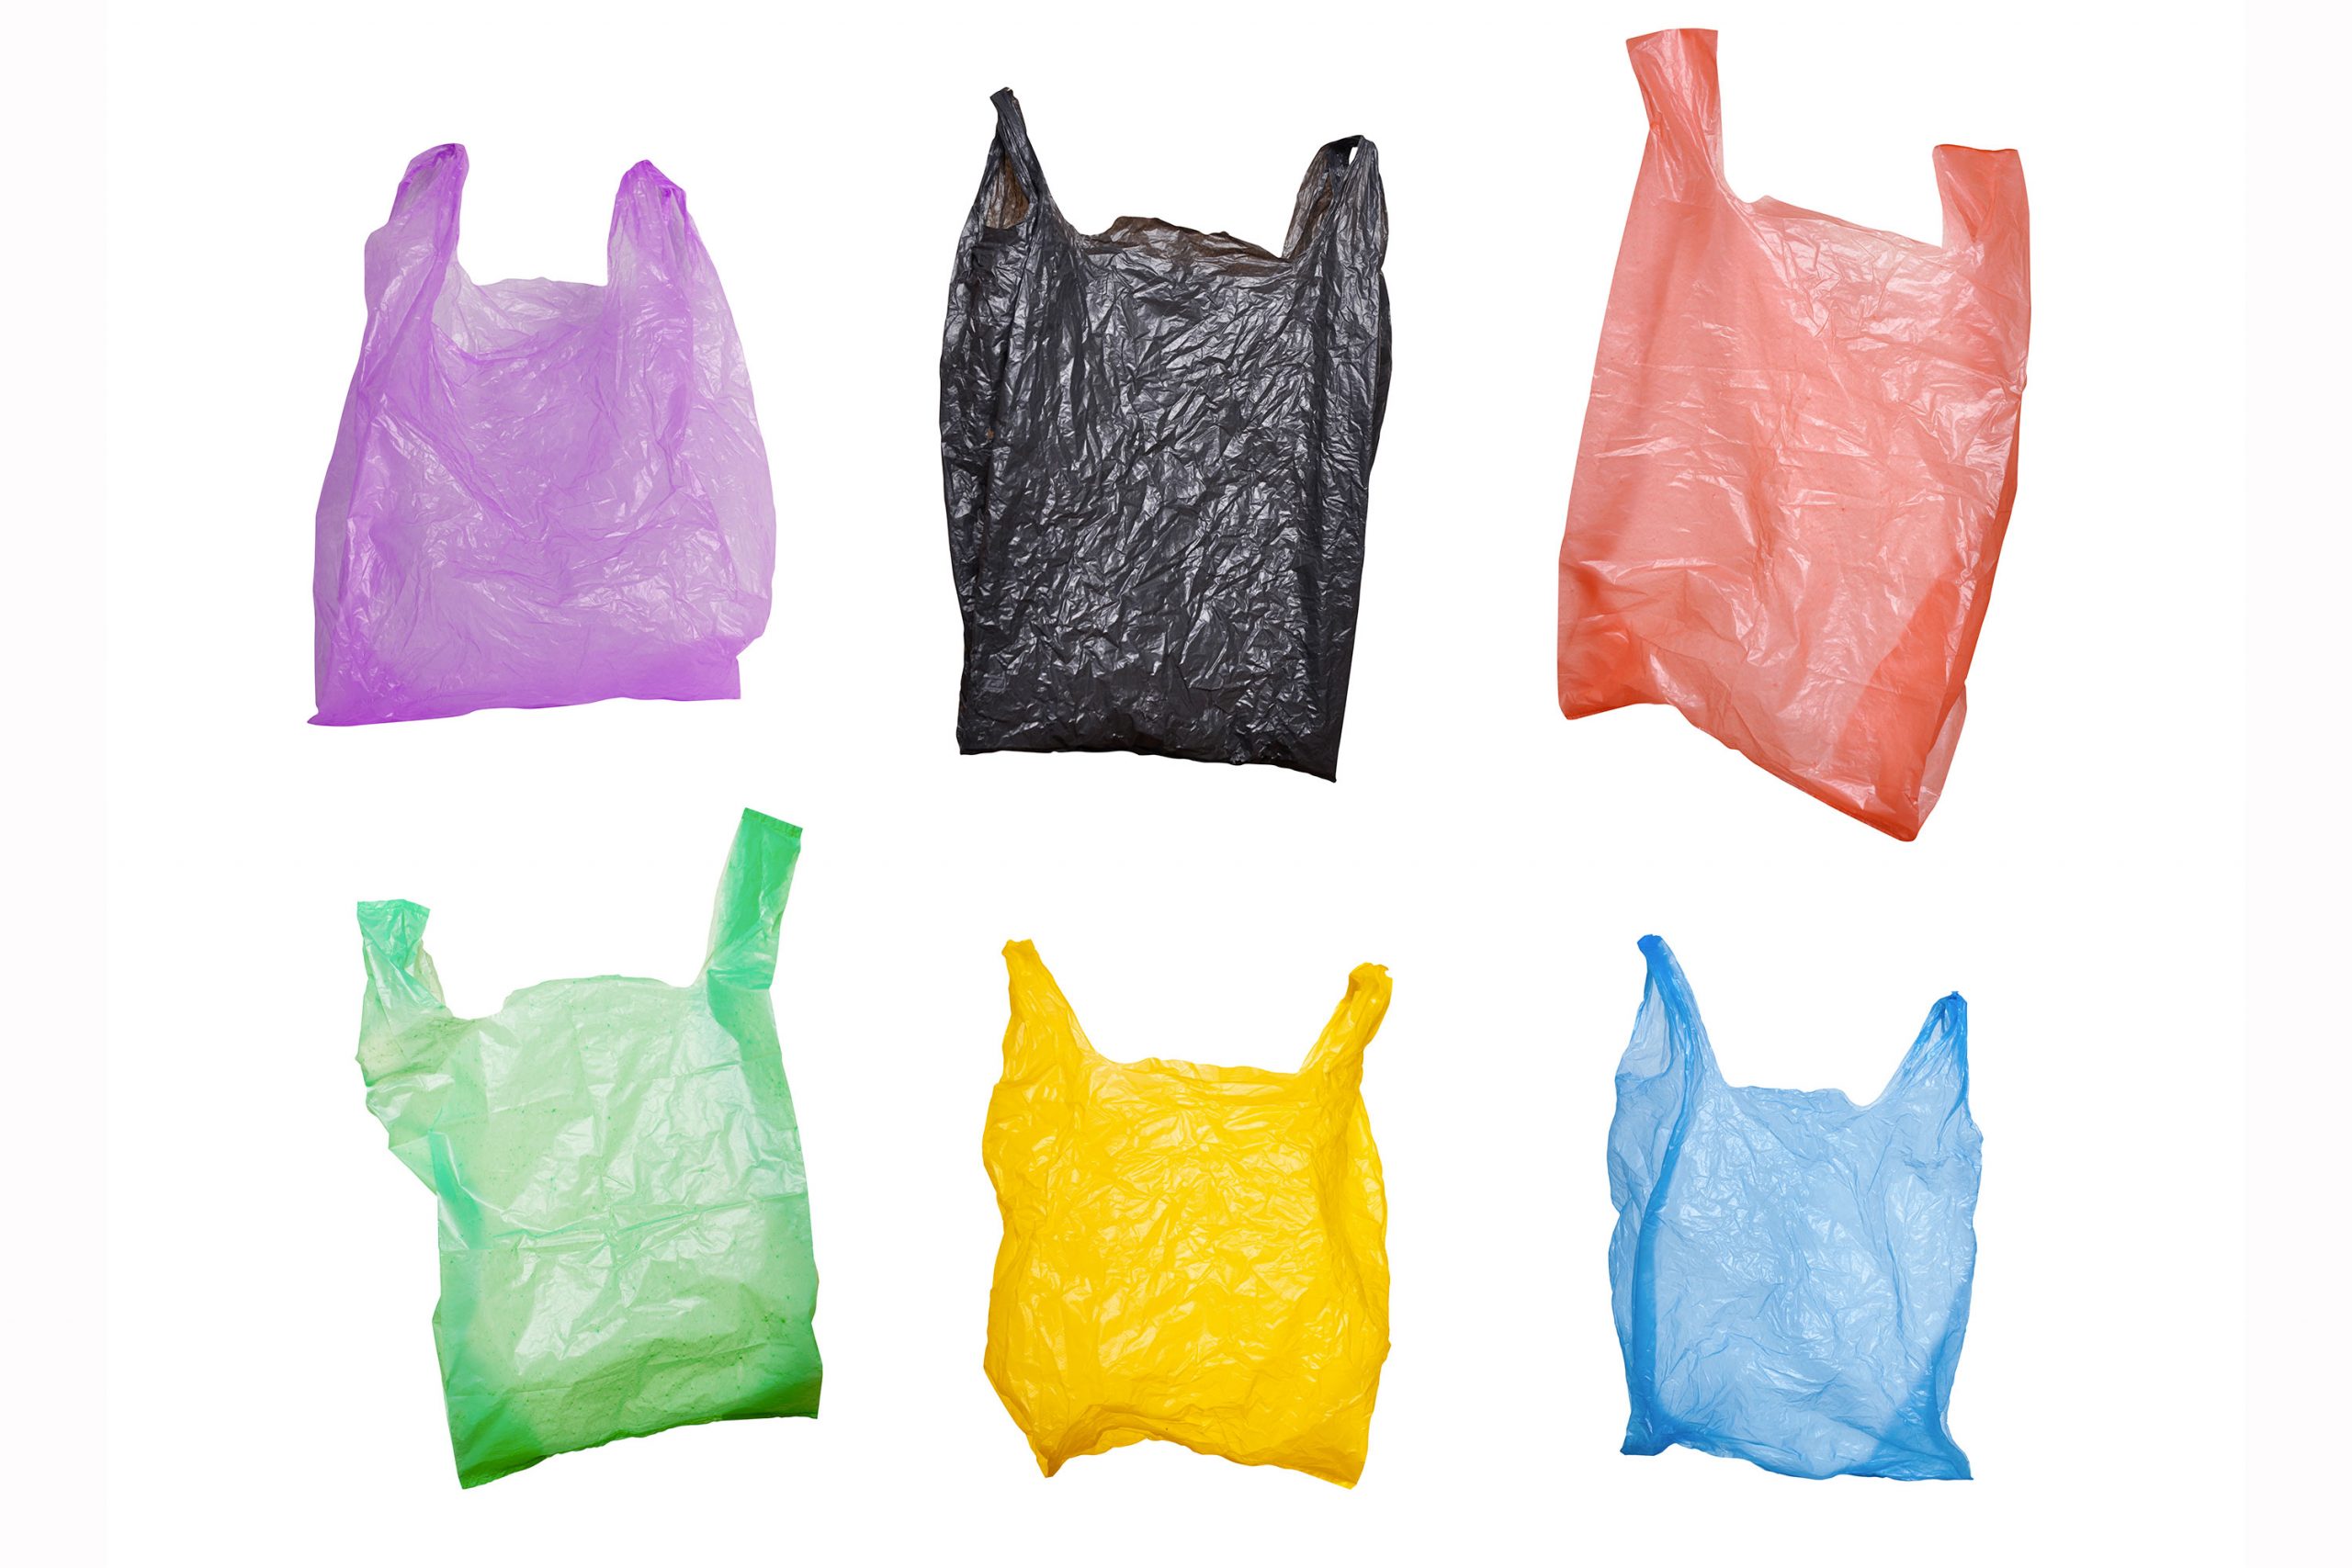 Tunisie: Interdiction de fabrication de certains types de sacs en plastique